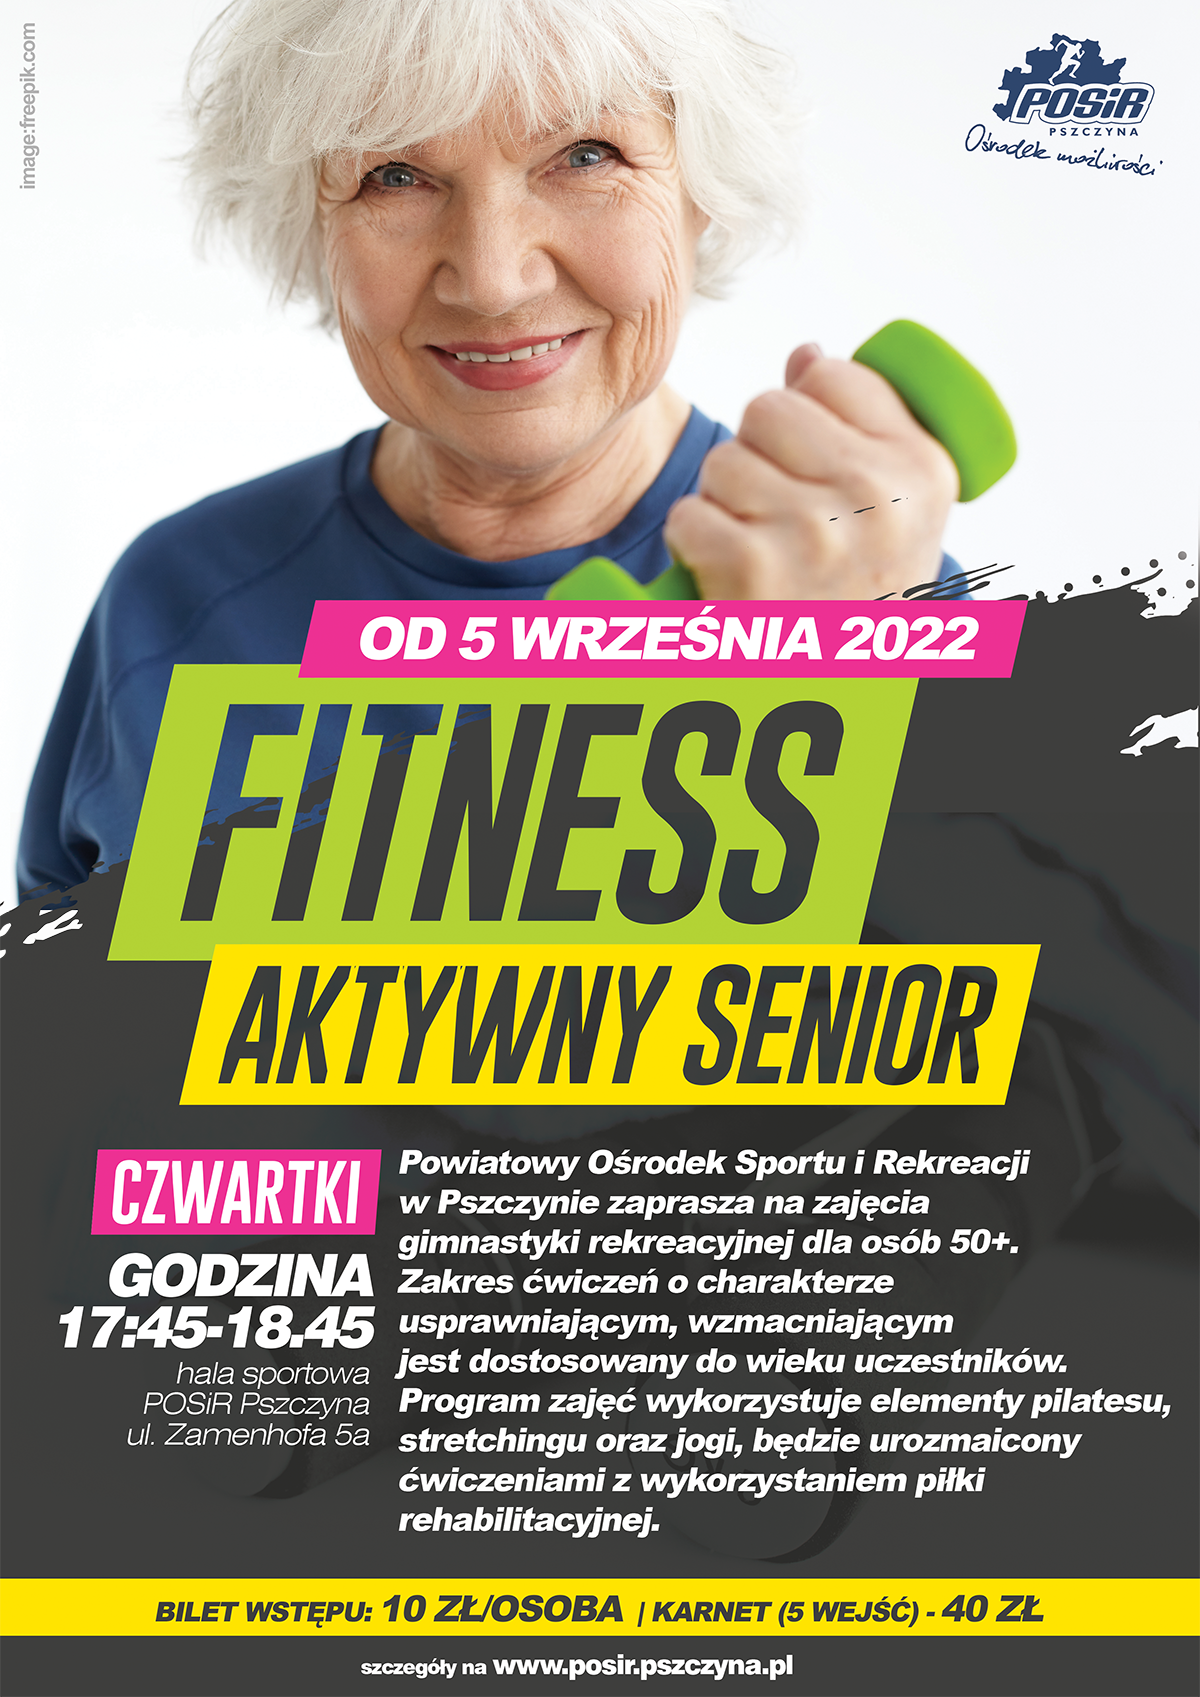 Plakat informacyjny zajęcia fitness aktywny senior; image: freepik.com